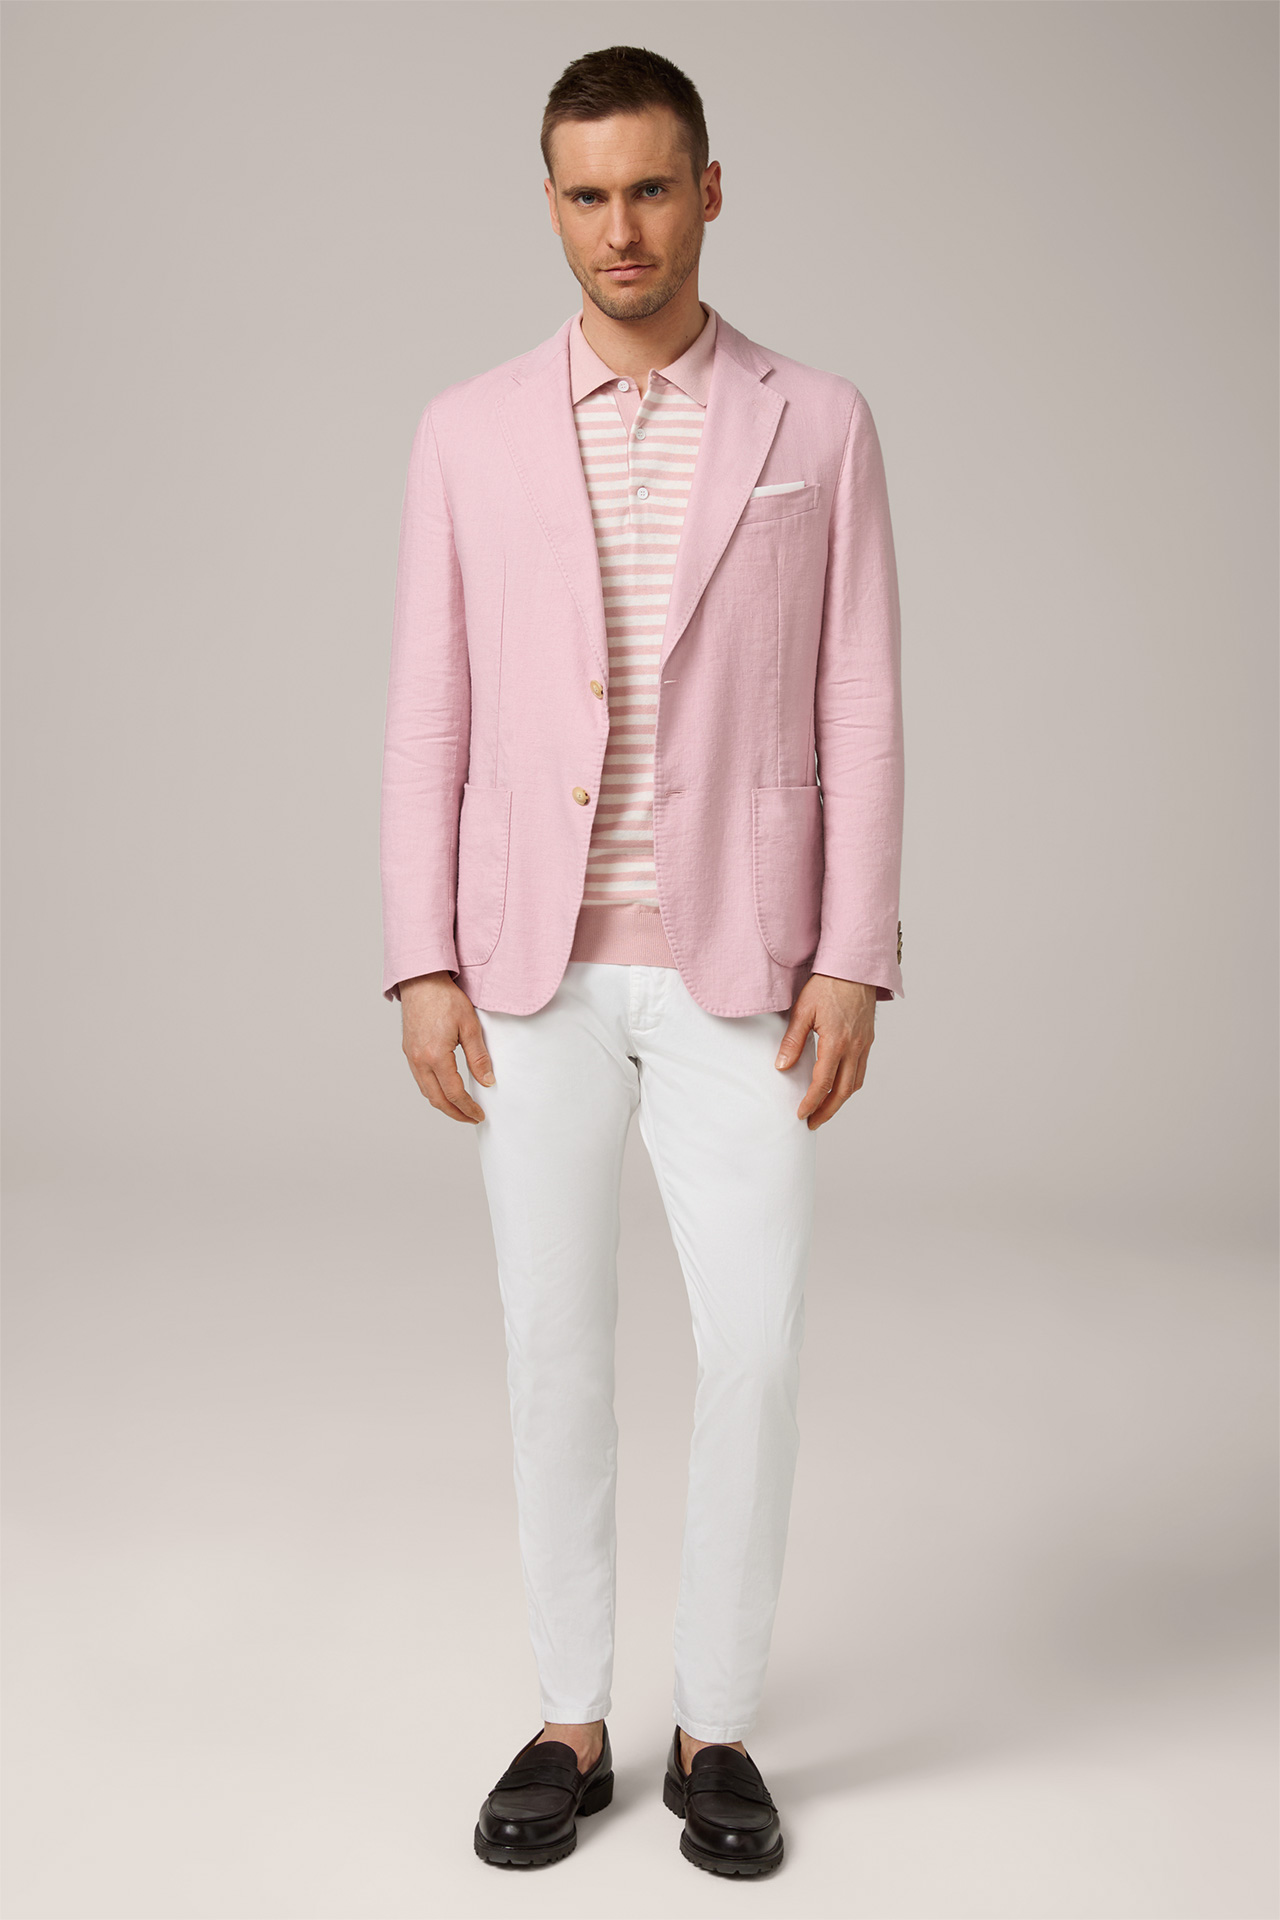 Giro Linen Blend Modular Jacket in Pale Pink